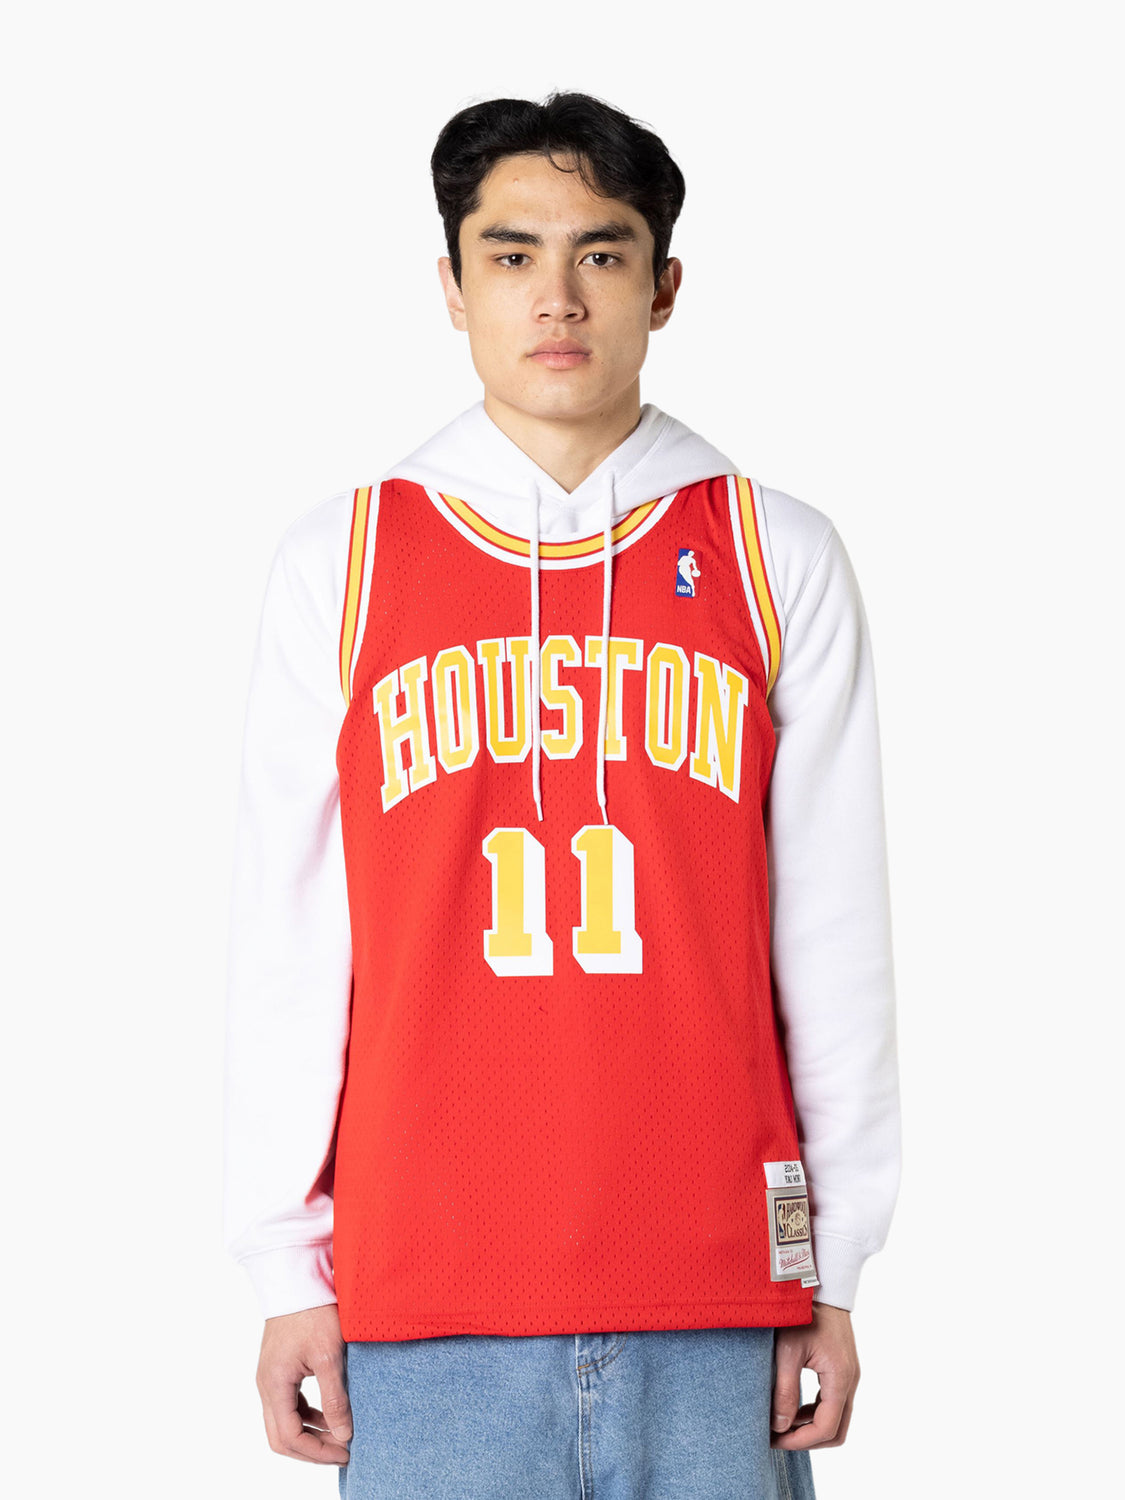 Buy Houston Rockets Jerseys & Teamwear